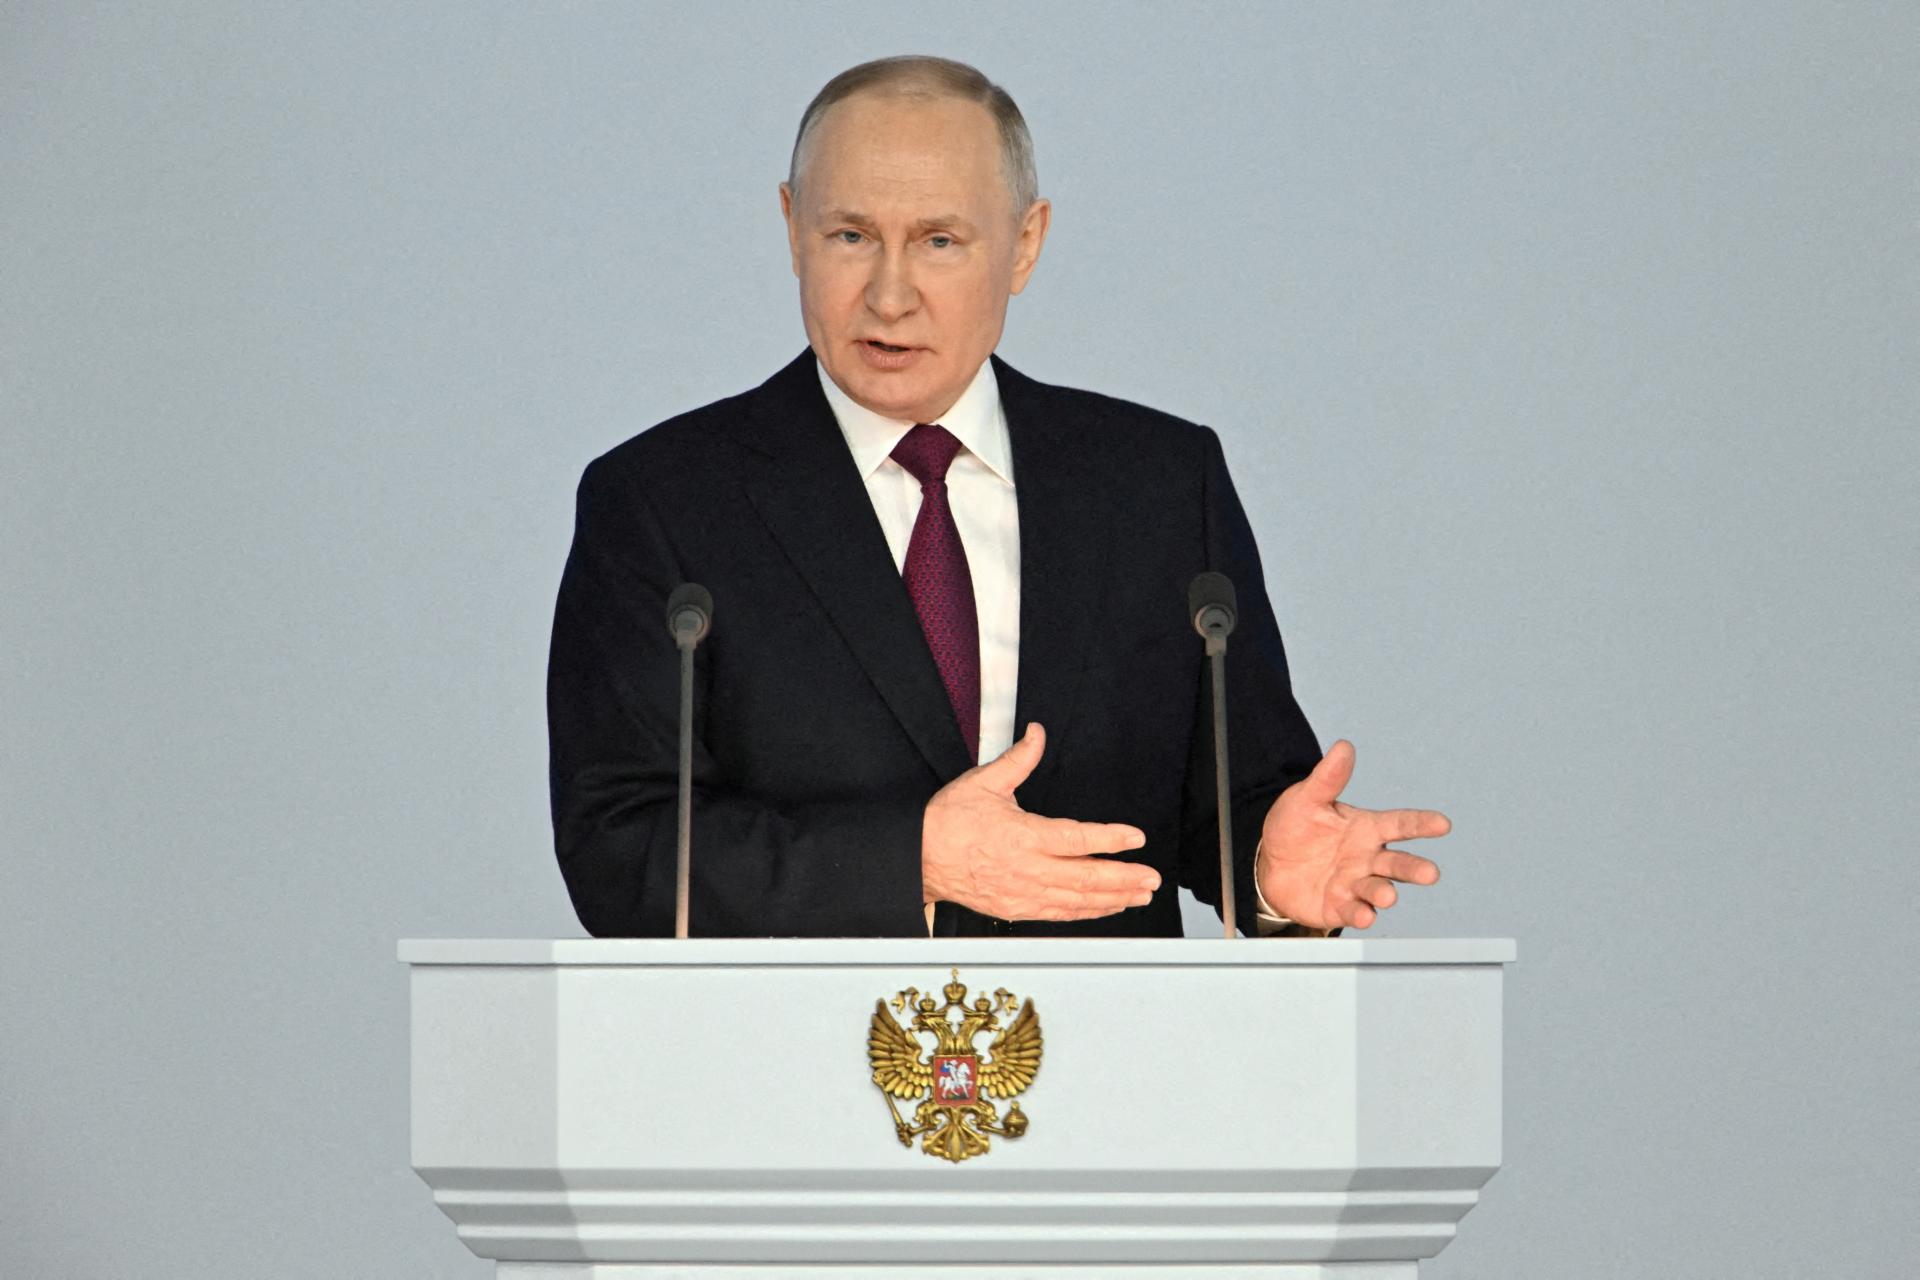 Vojna nasmerovala Moskvu k rozpočtovému kolapsu